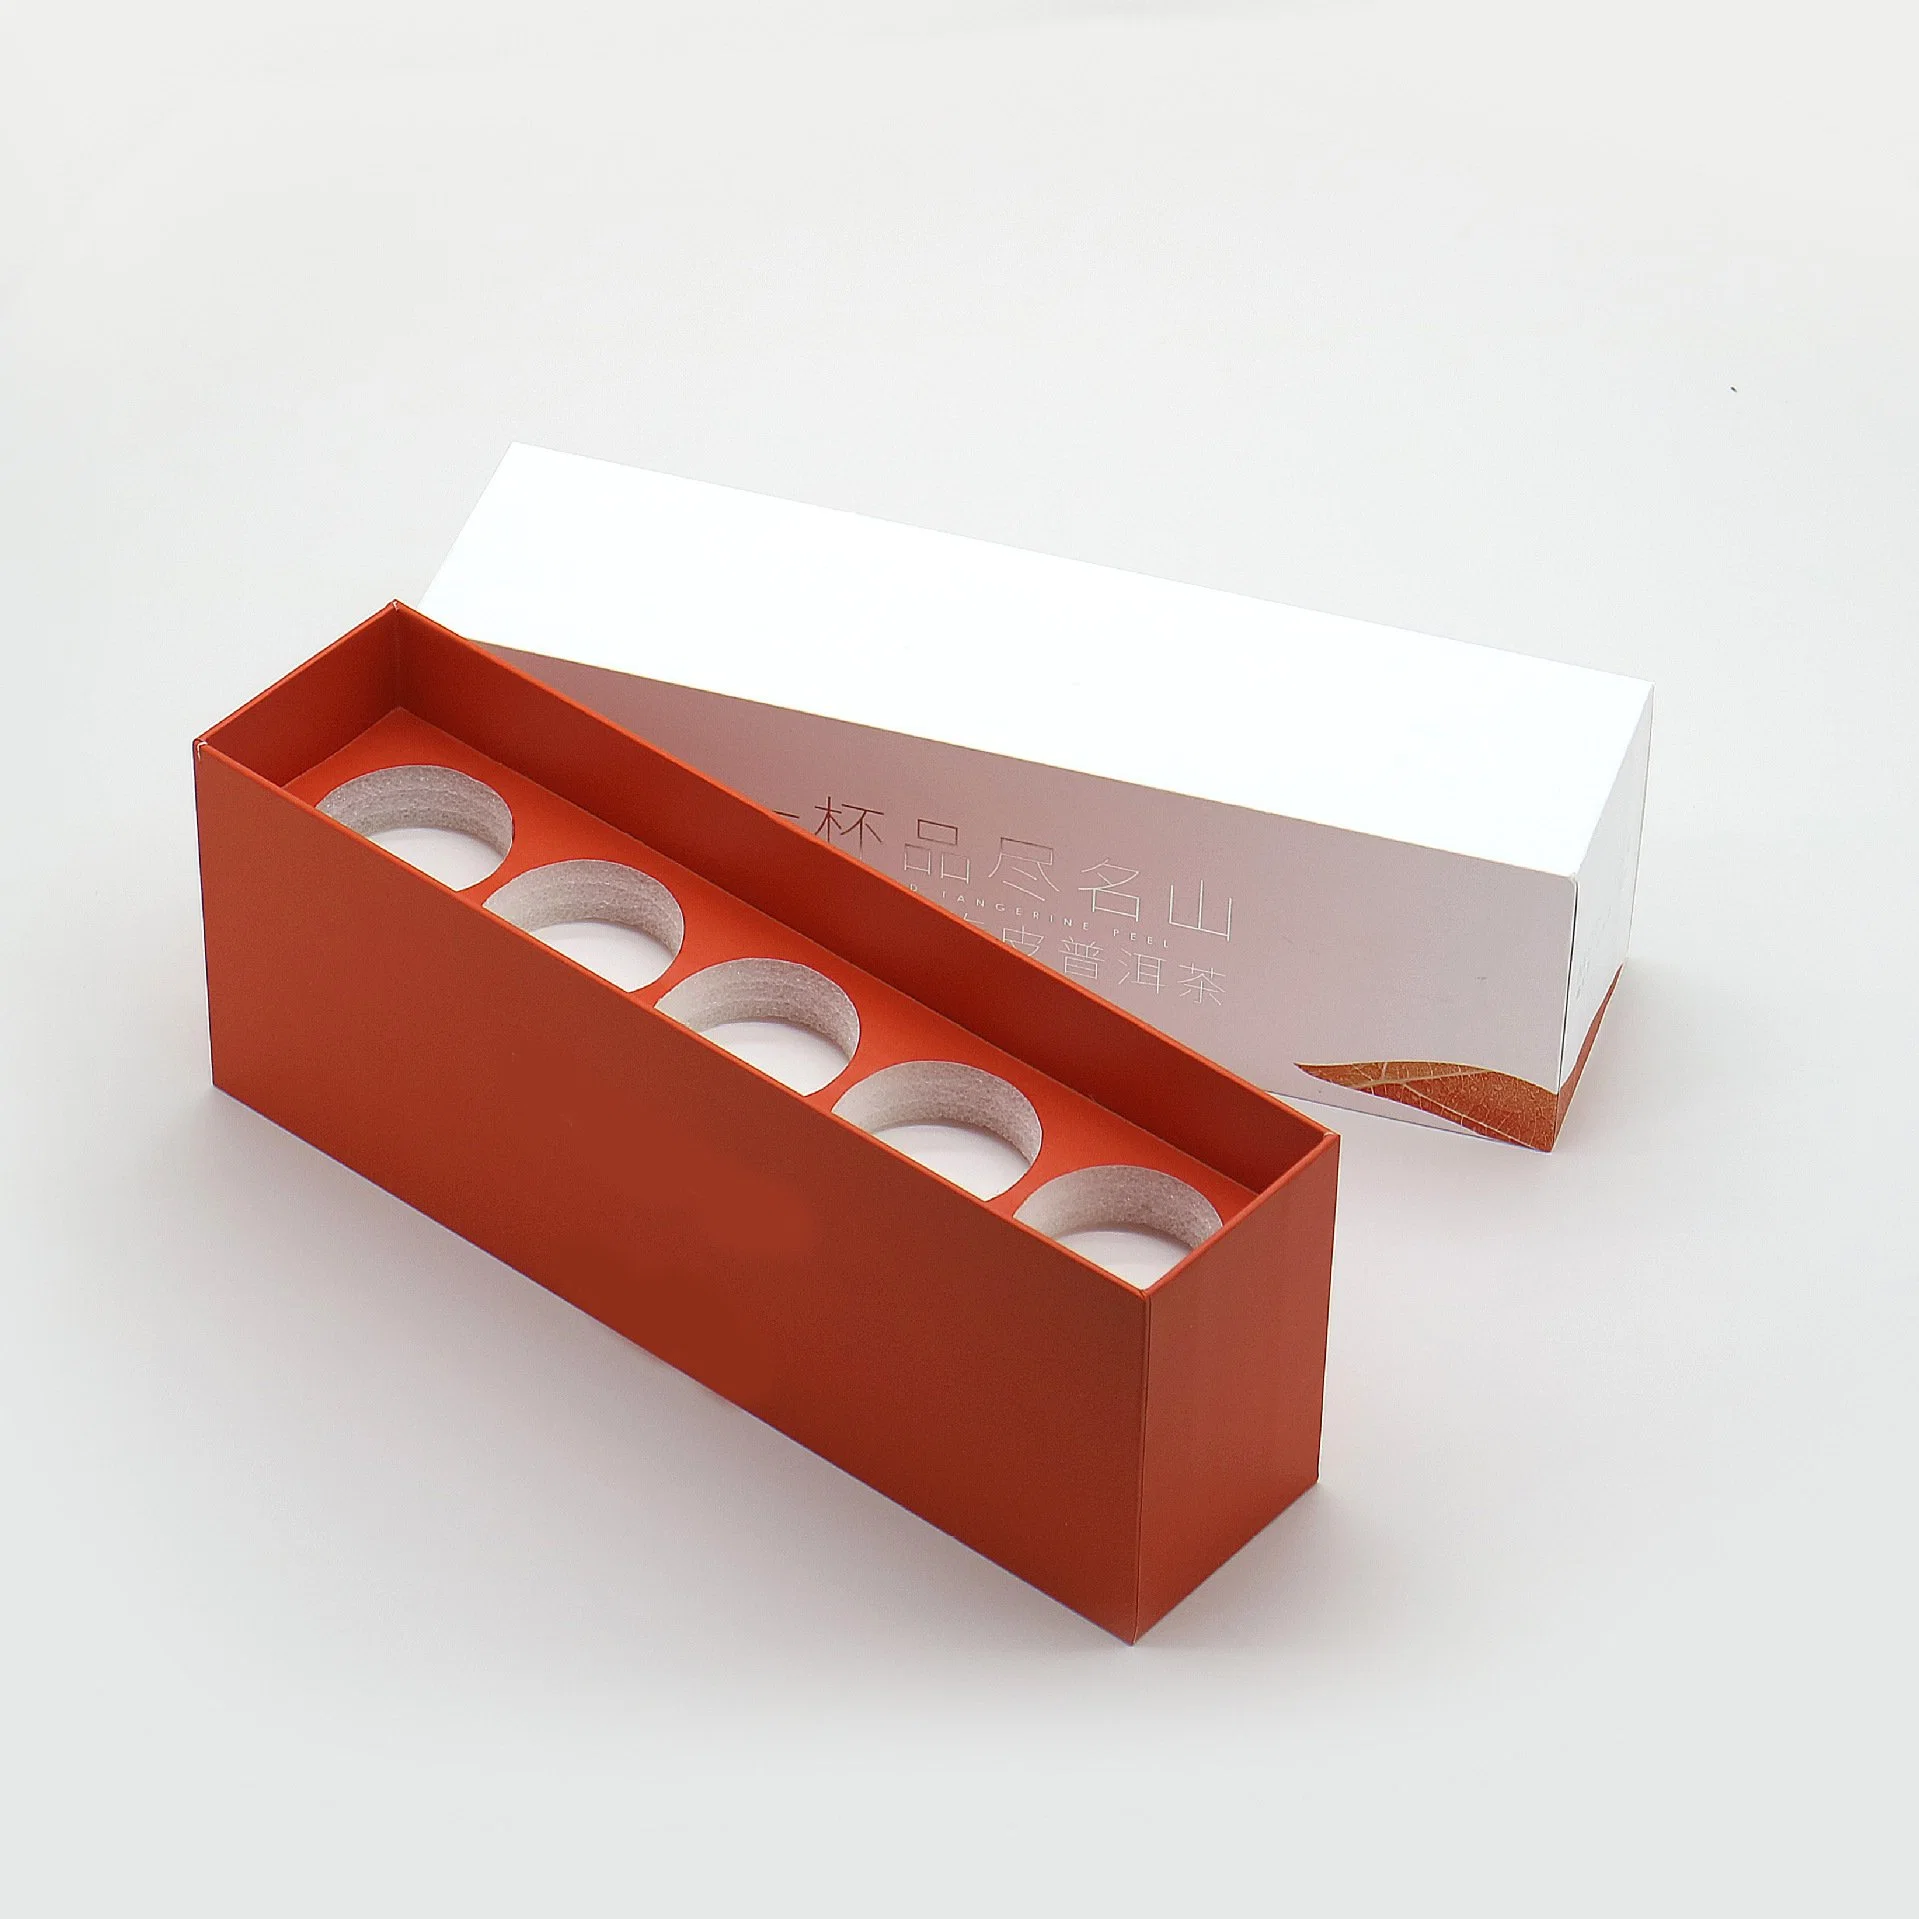 La fábrica de metal de alta calidad de impresión de embalaje Lata de Té El té de la caja de Papel Caja de regalo puede chino clásico té personalizado Caja de cartón de estaño con relleno de espuma